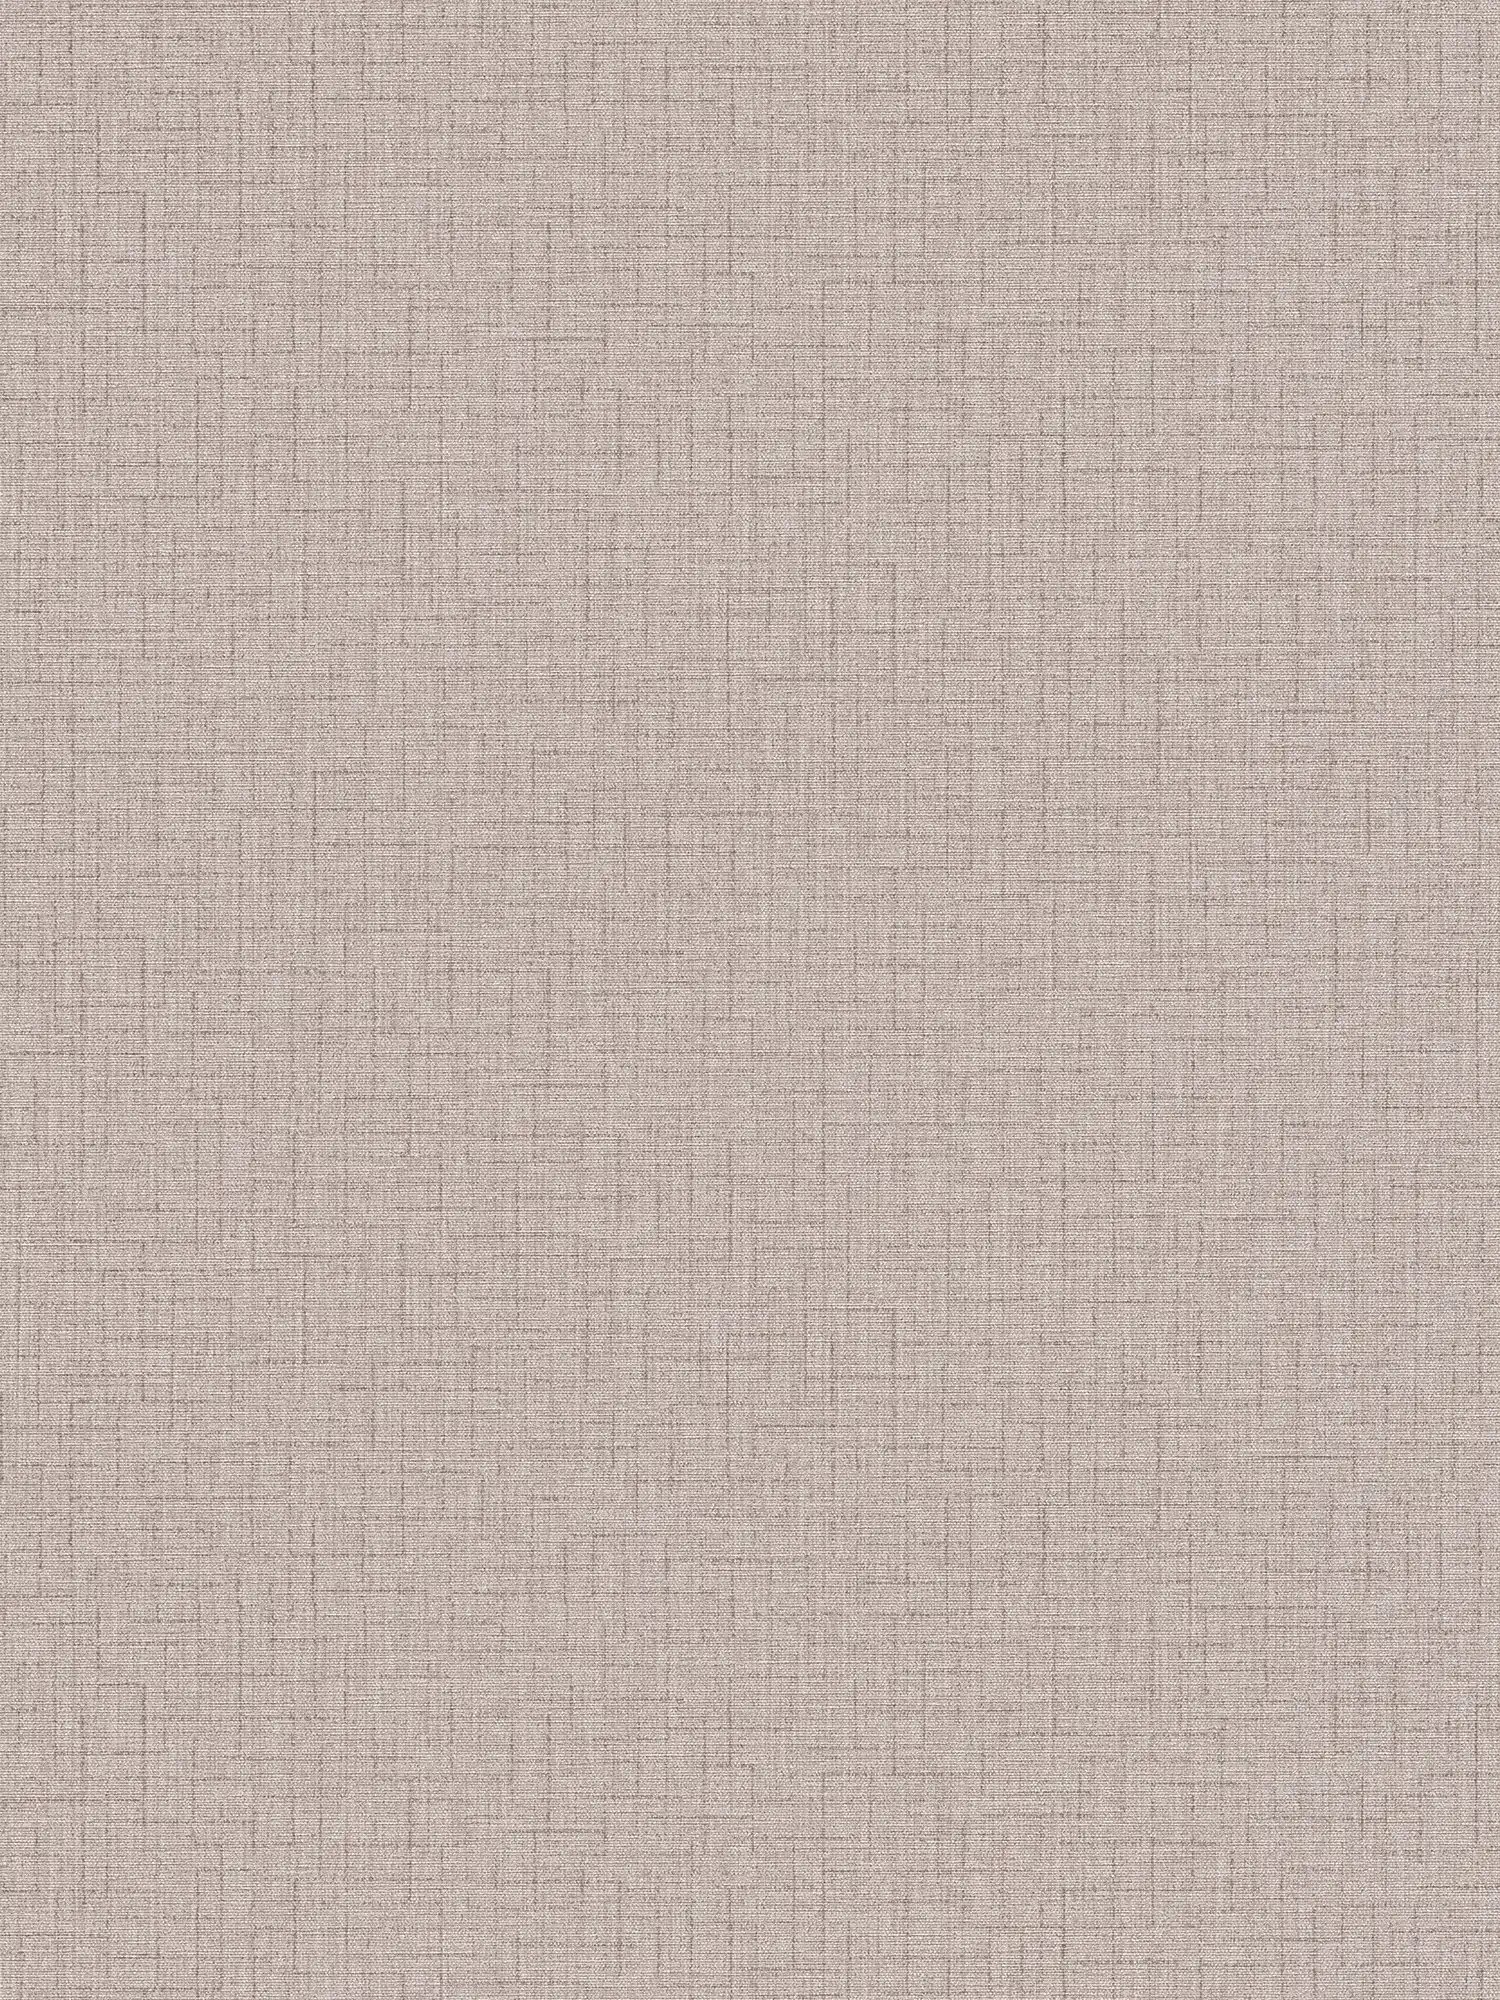 Papier peint uni avec design textile & motifs structurés - beige
